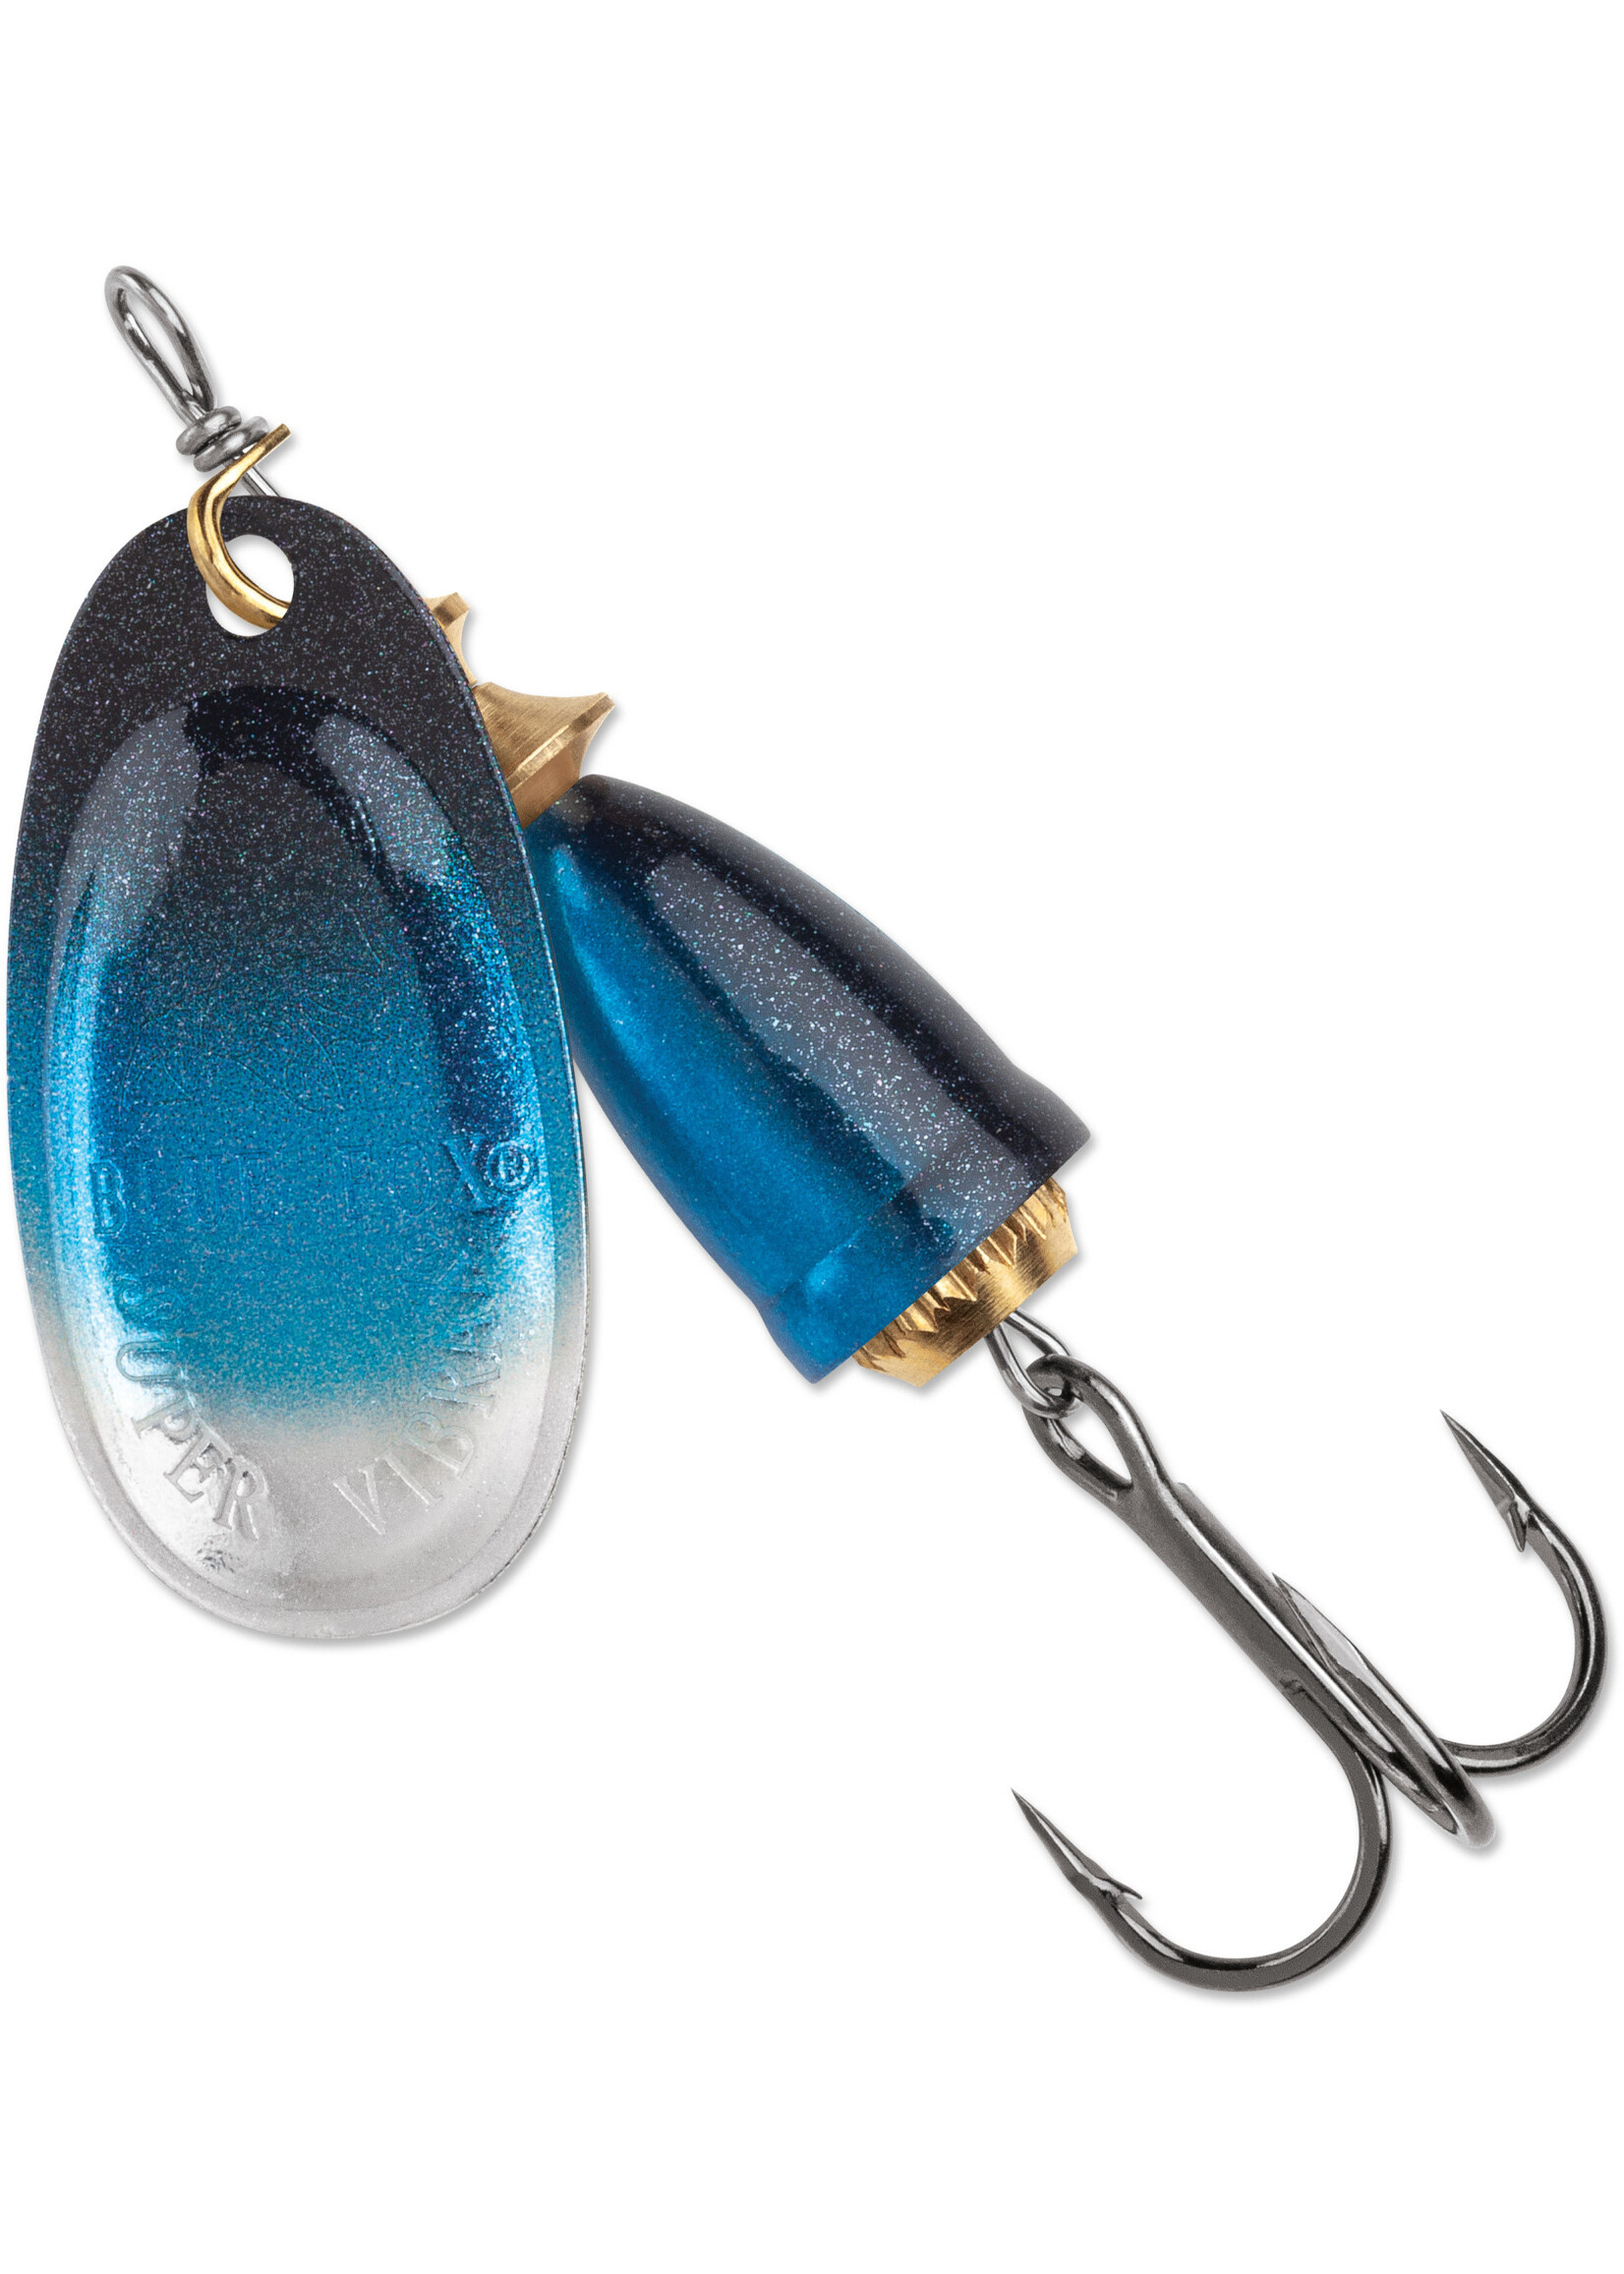 Blue Fox Classic Vibrax Painted 1/8 Oz Fishing Lures